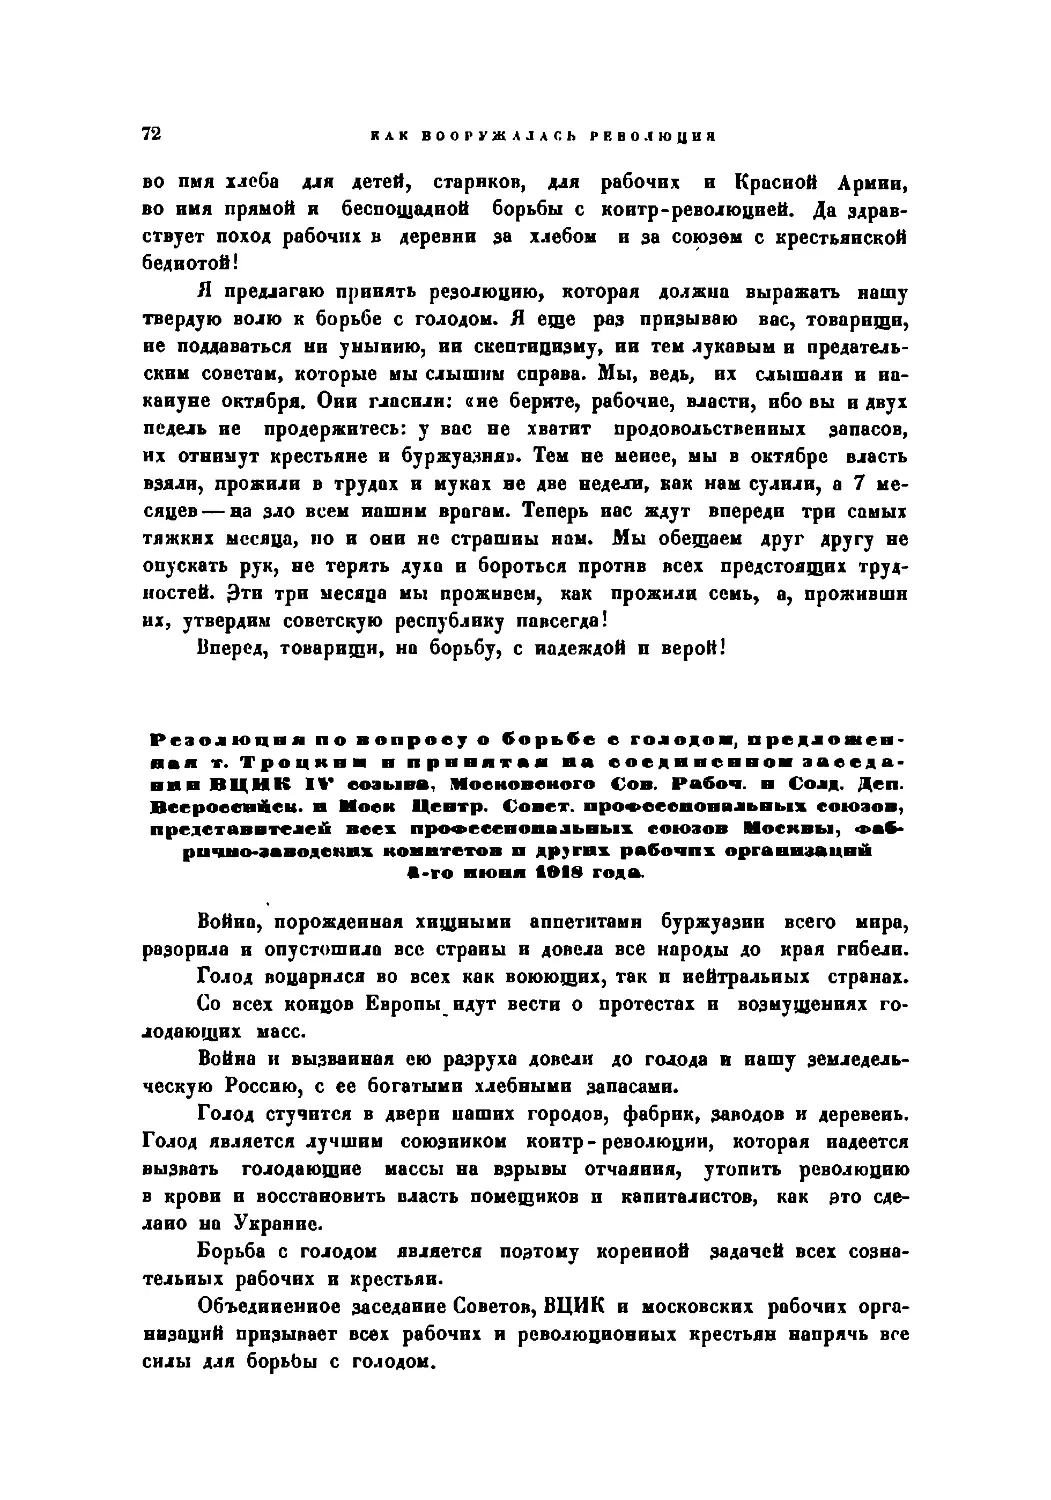 Резолюция по вопросу о борьбе с голоюм, принятая в заседании 4 июня 1918 г.